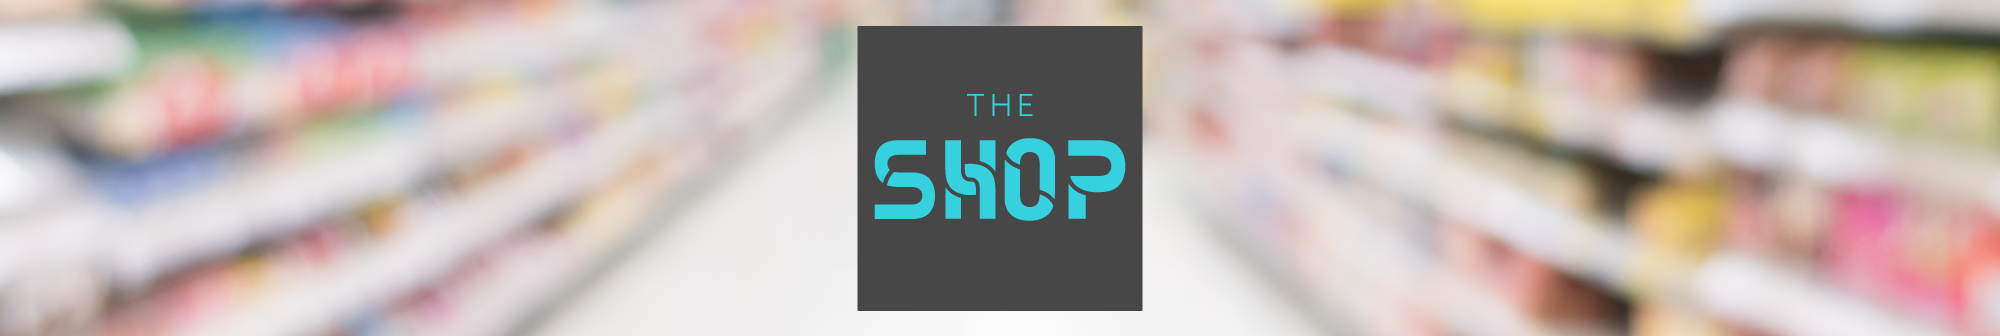 The Shop Logo header image